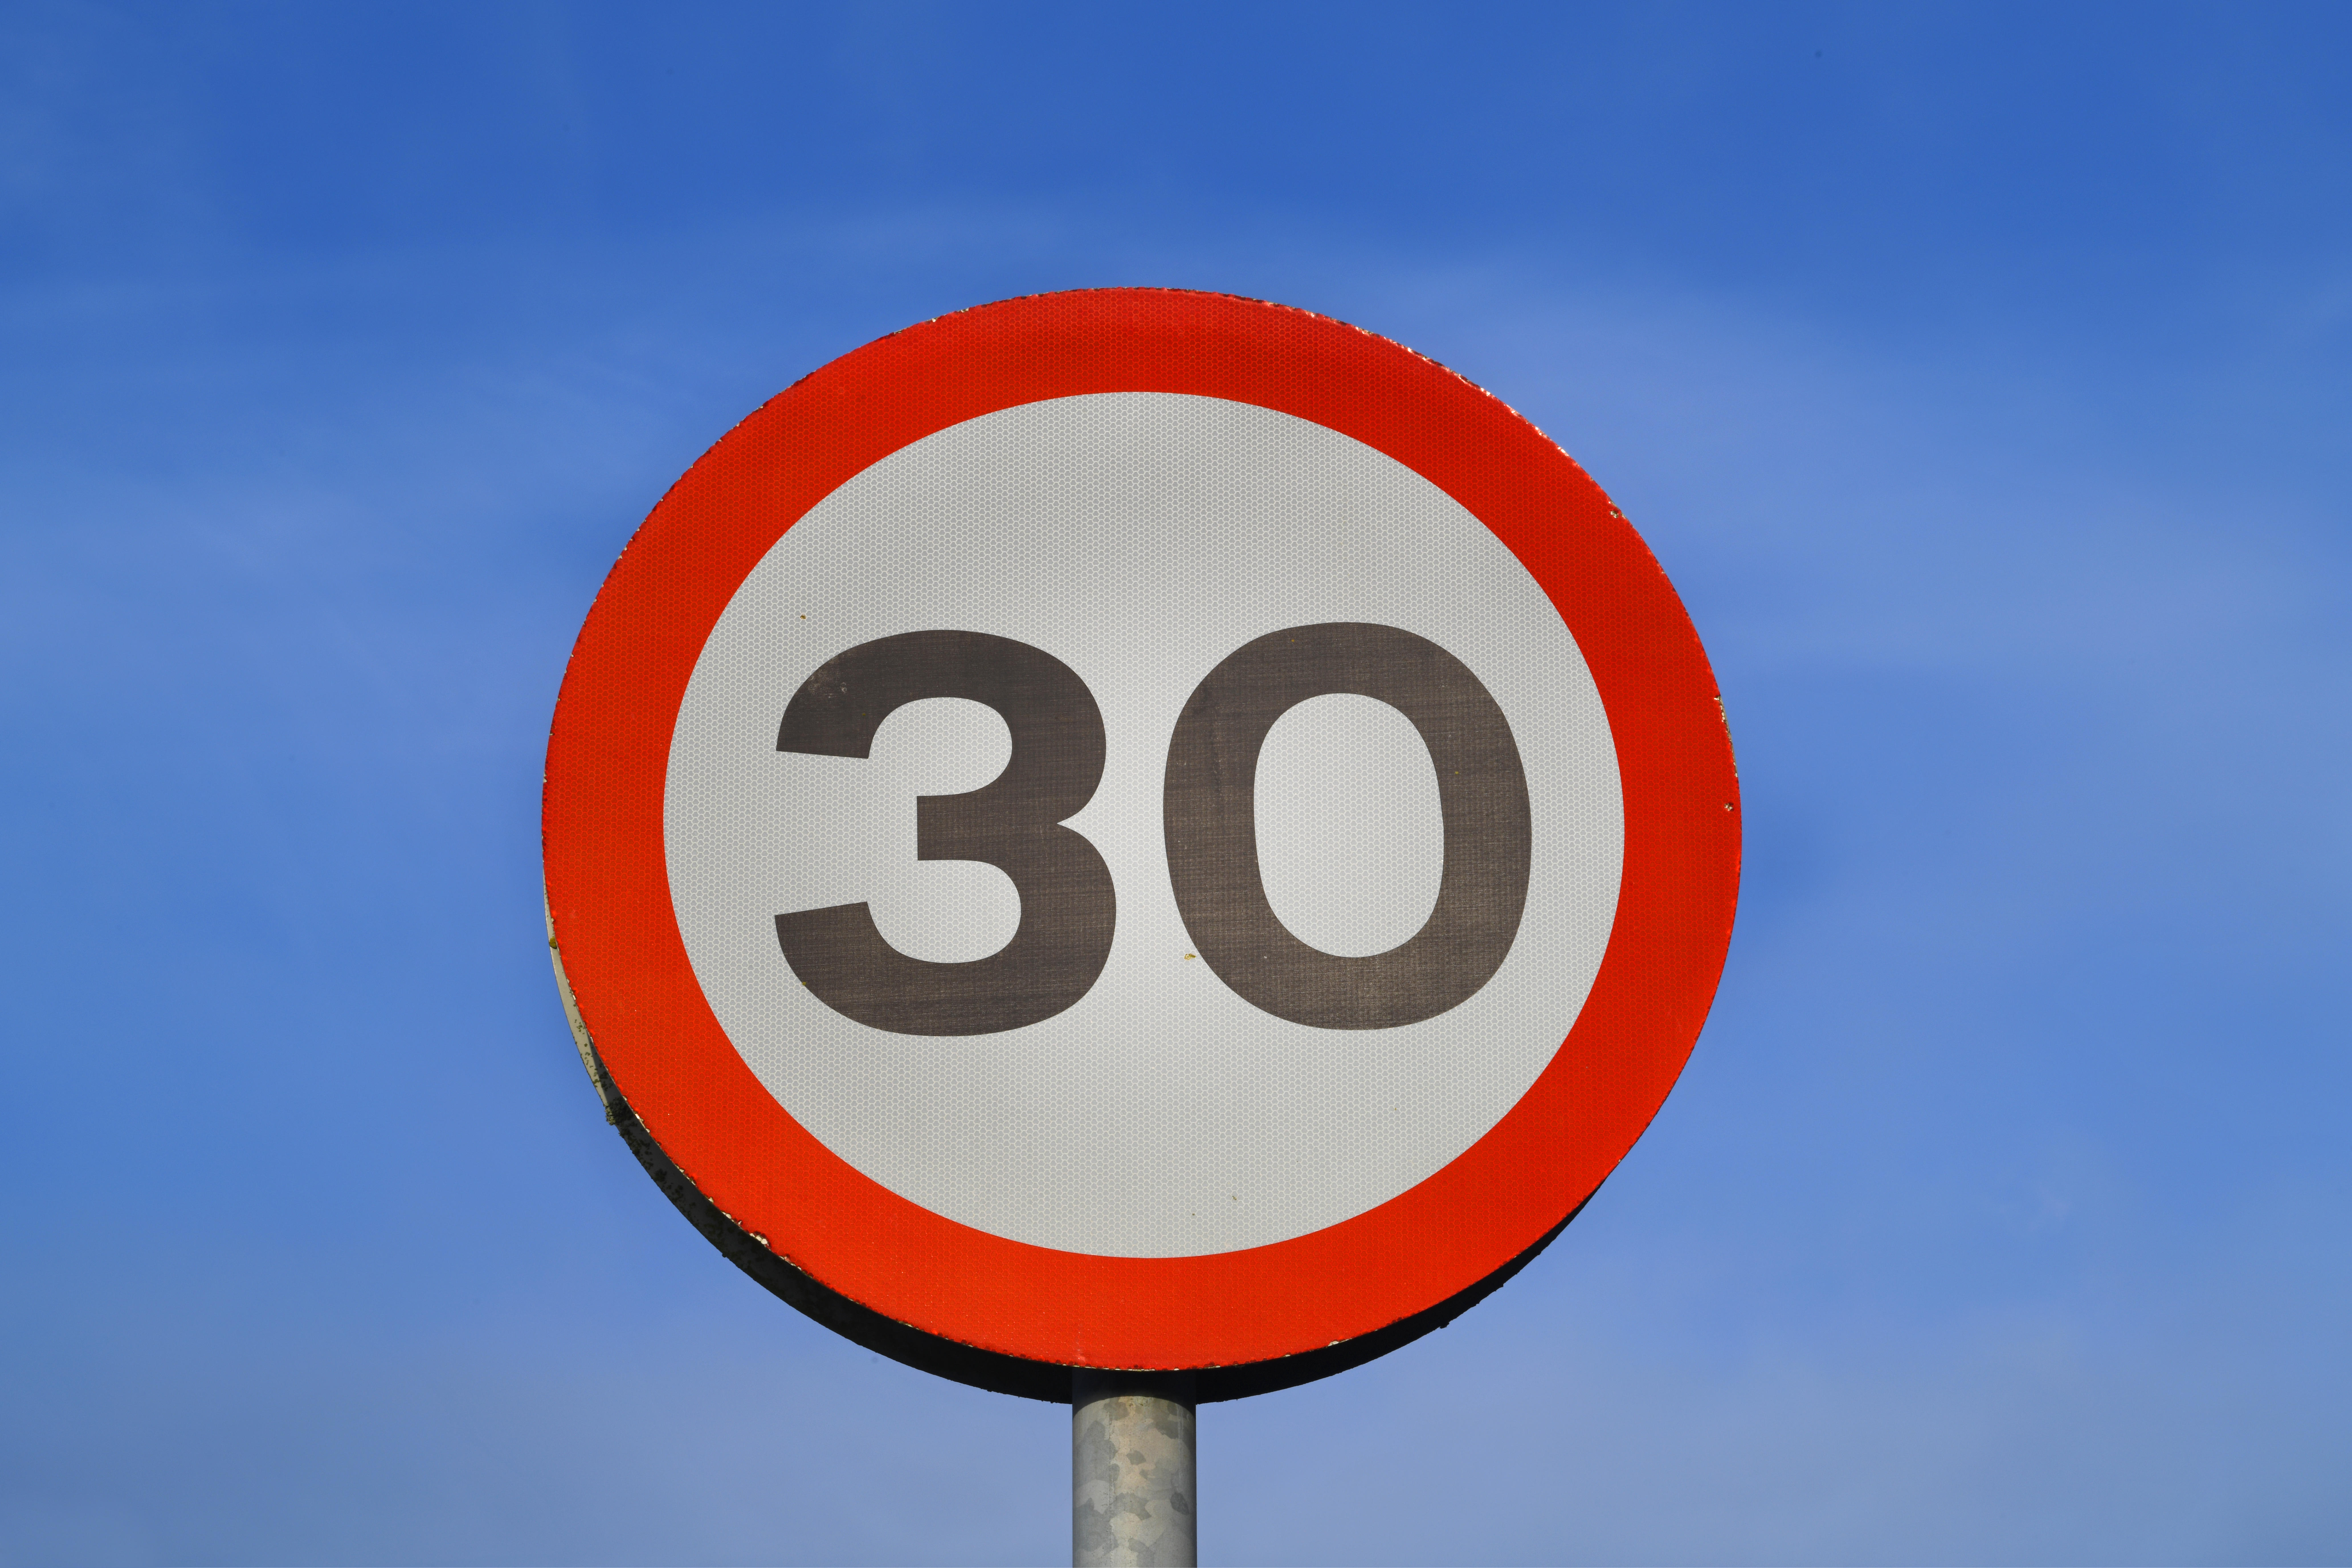 A 30mph road sign